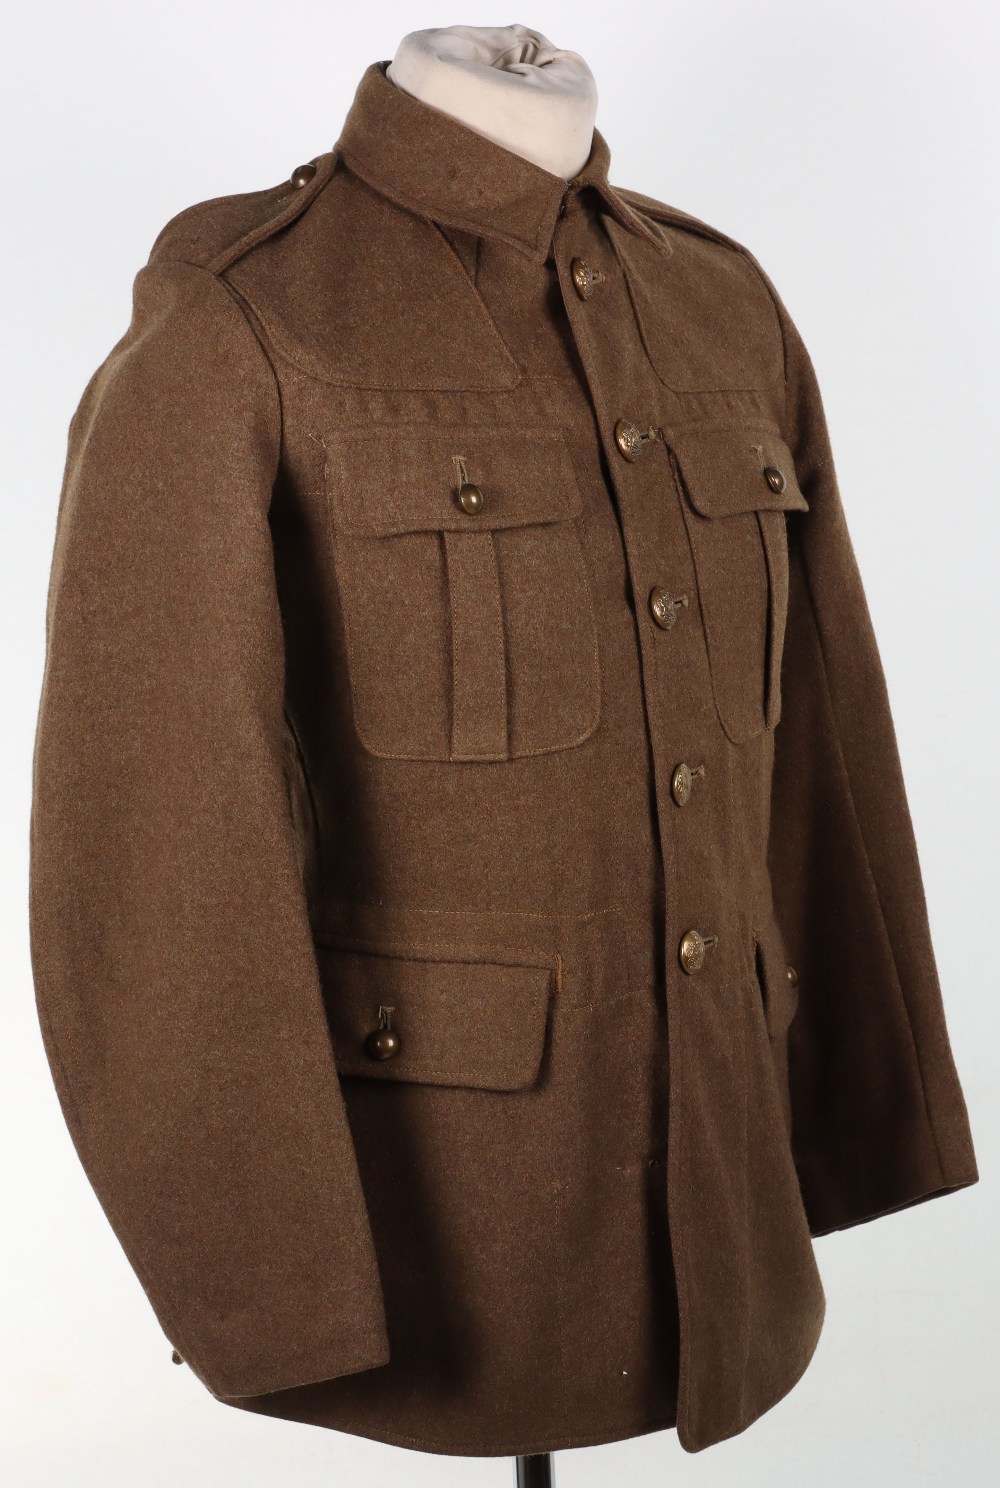 1922 Pattern Service Dress Tunic - Image 3 of 12